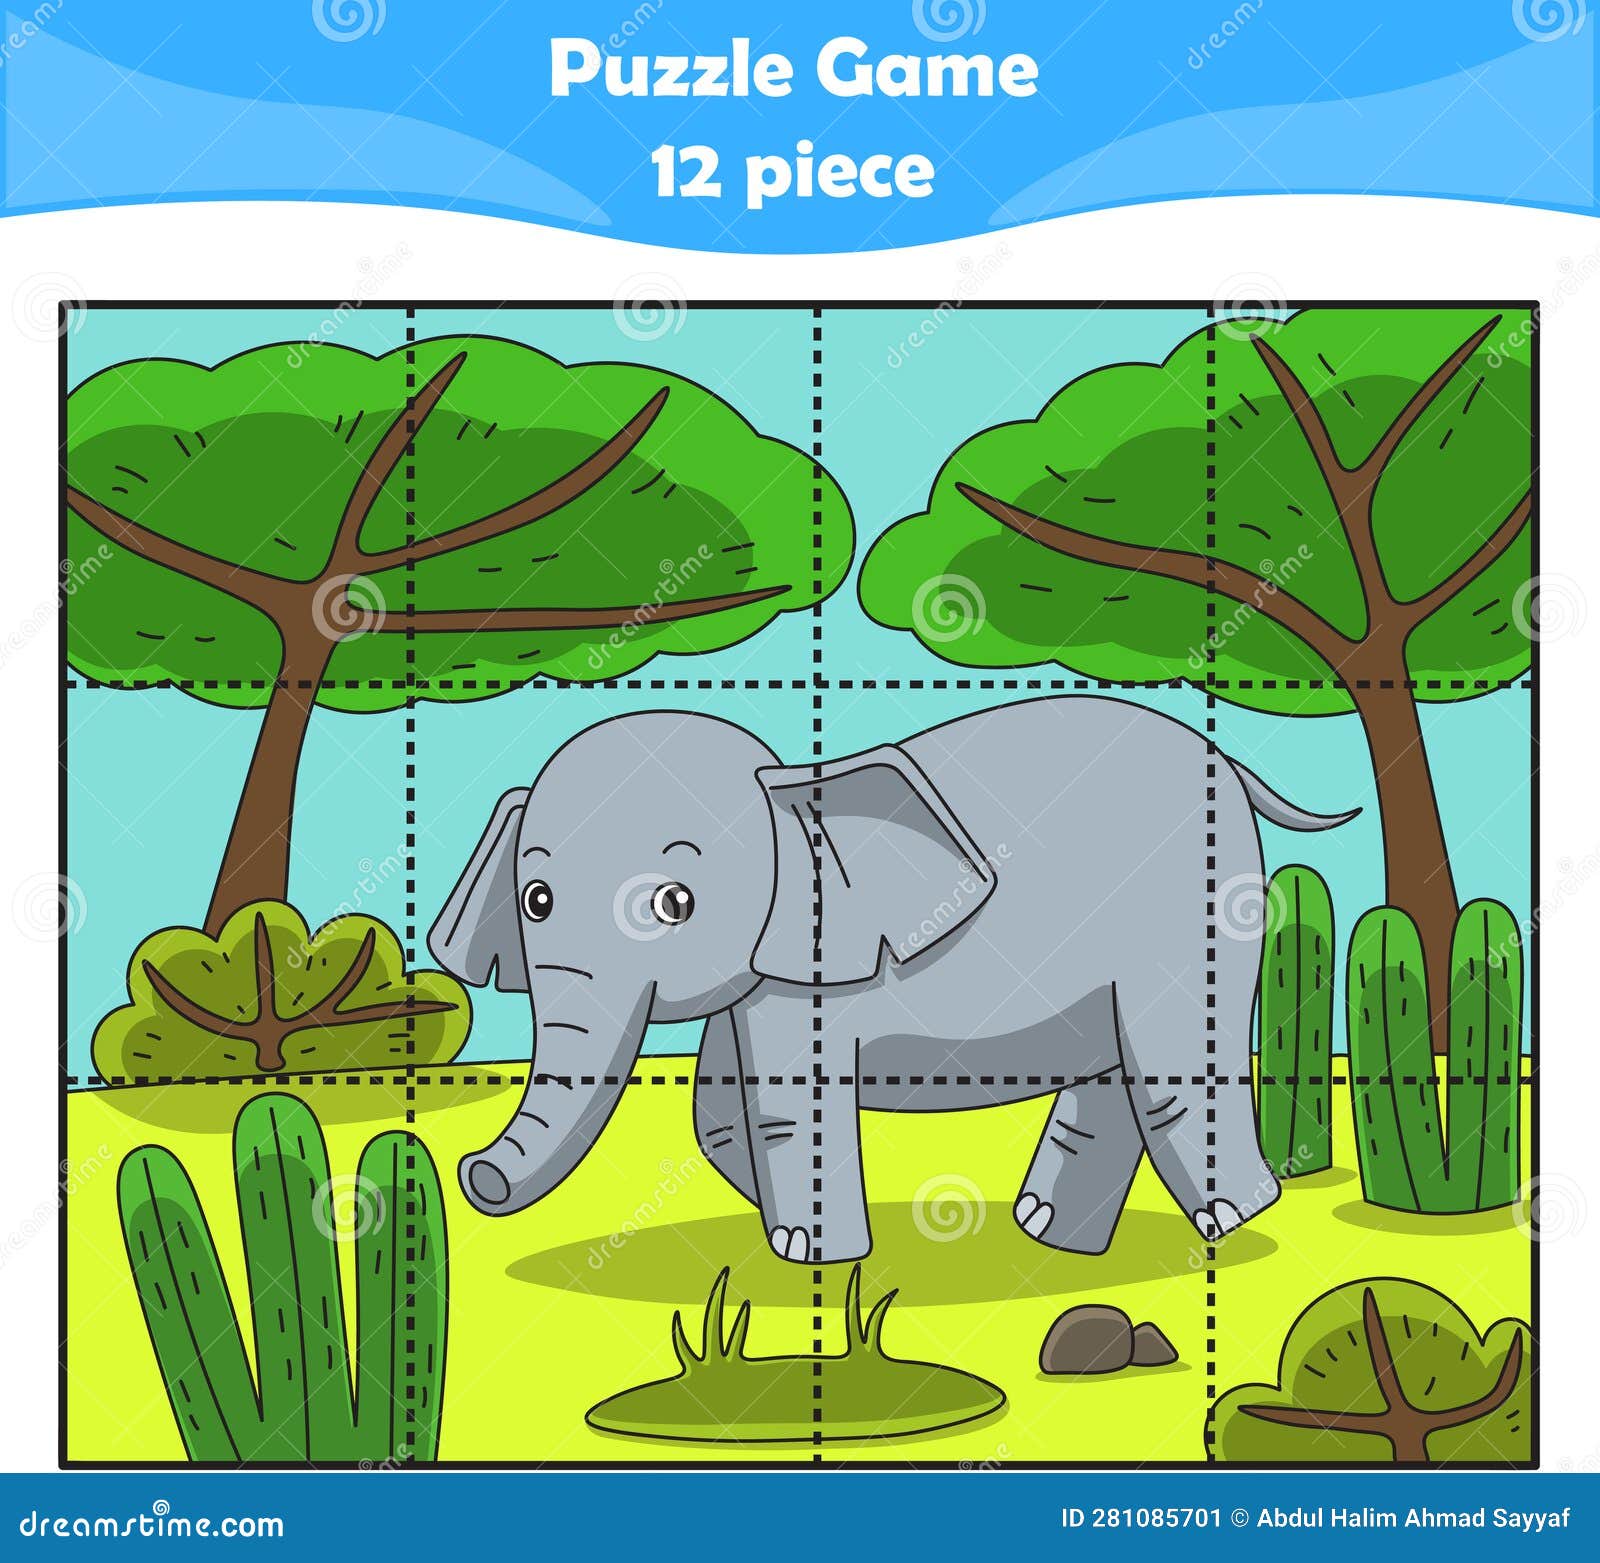 Jogos e Puzzles Didácticos para Crianças